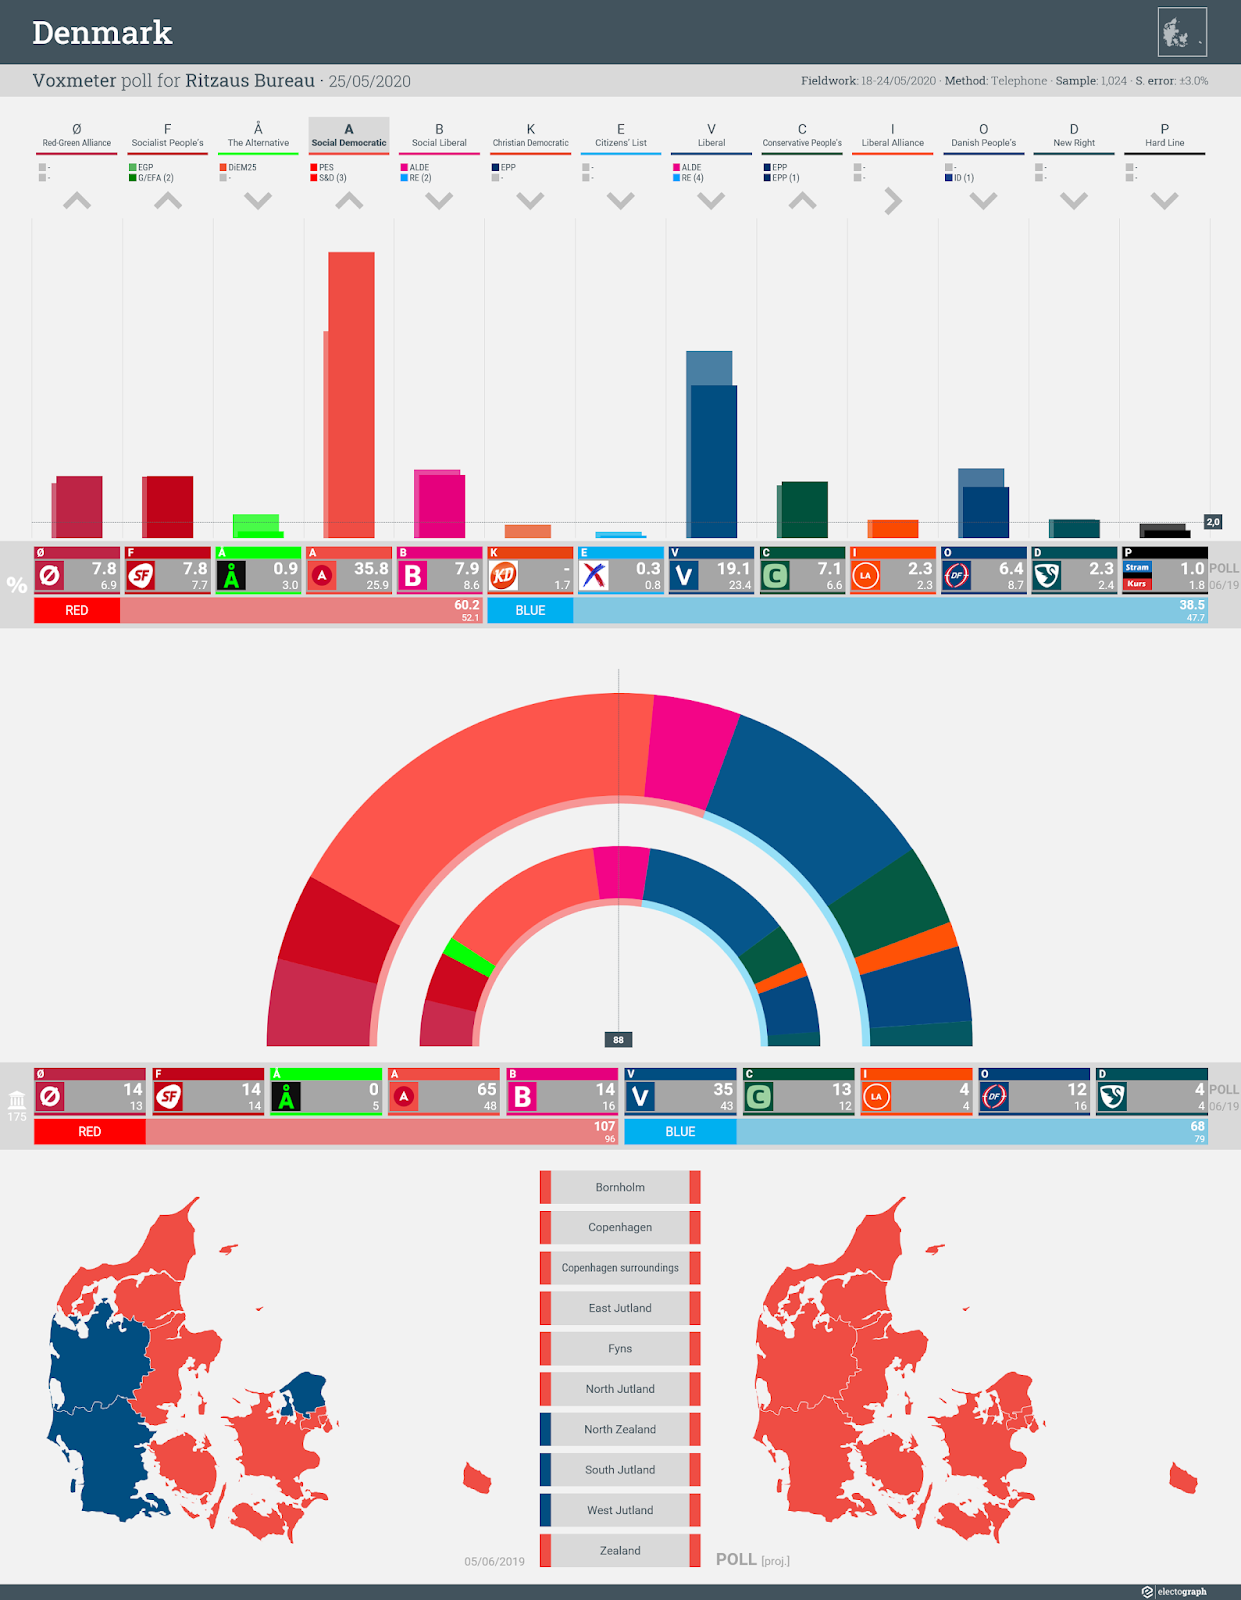 DENMARK: Voxmeter poll chart for Ritzaus Bureau, 25 May 2020